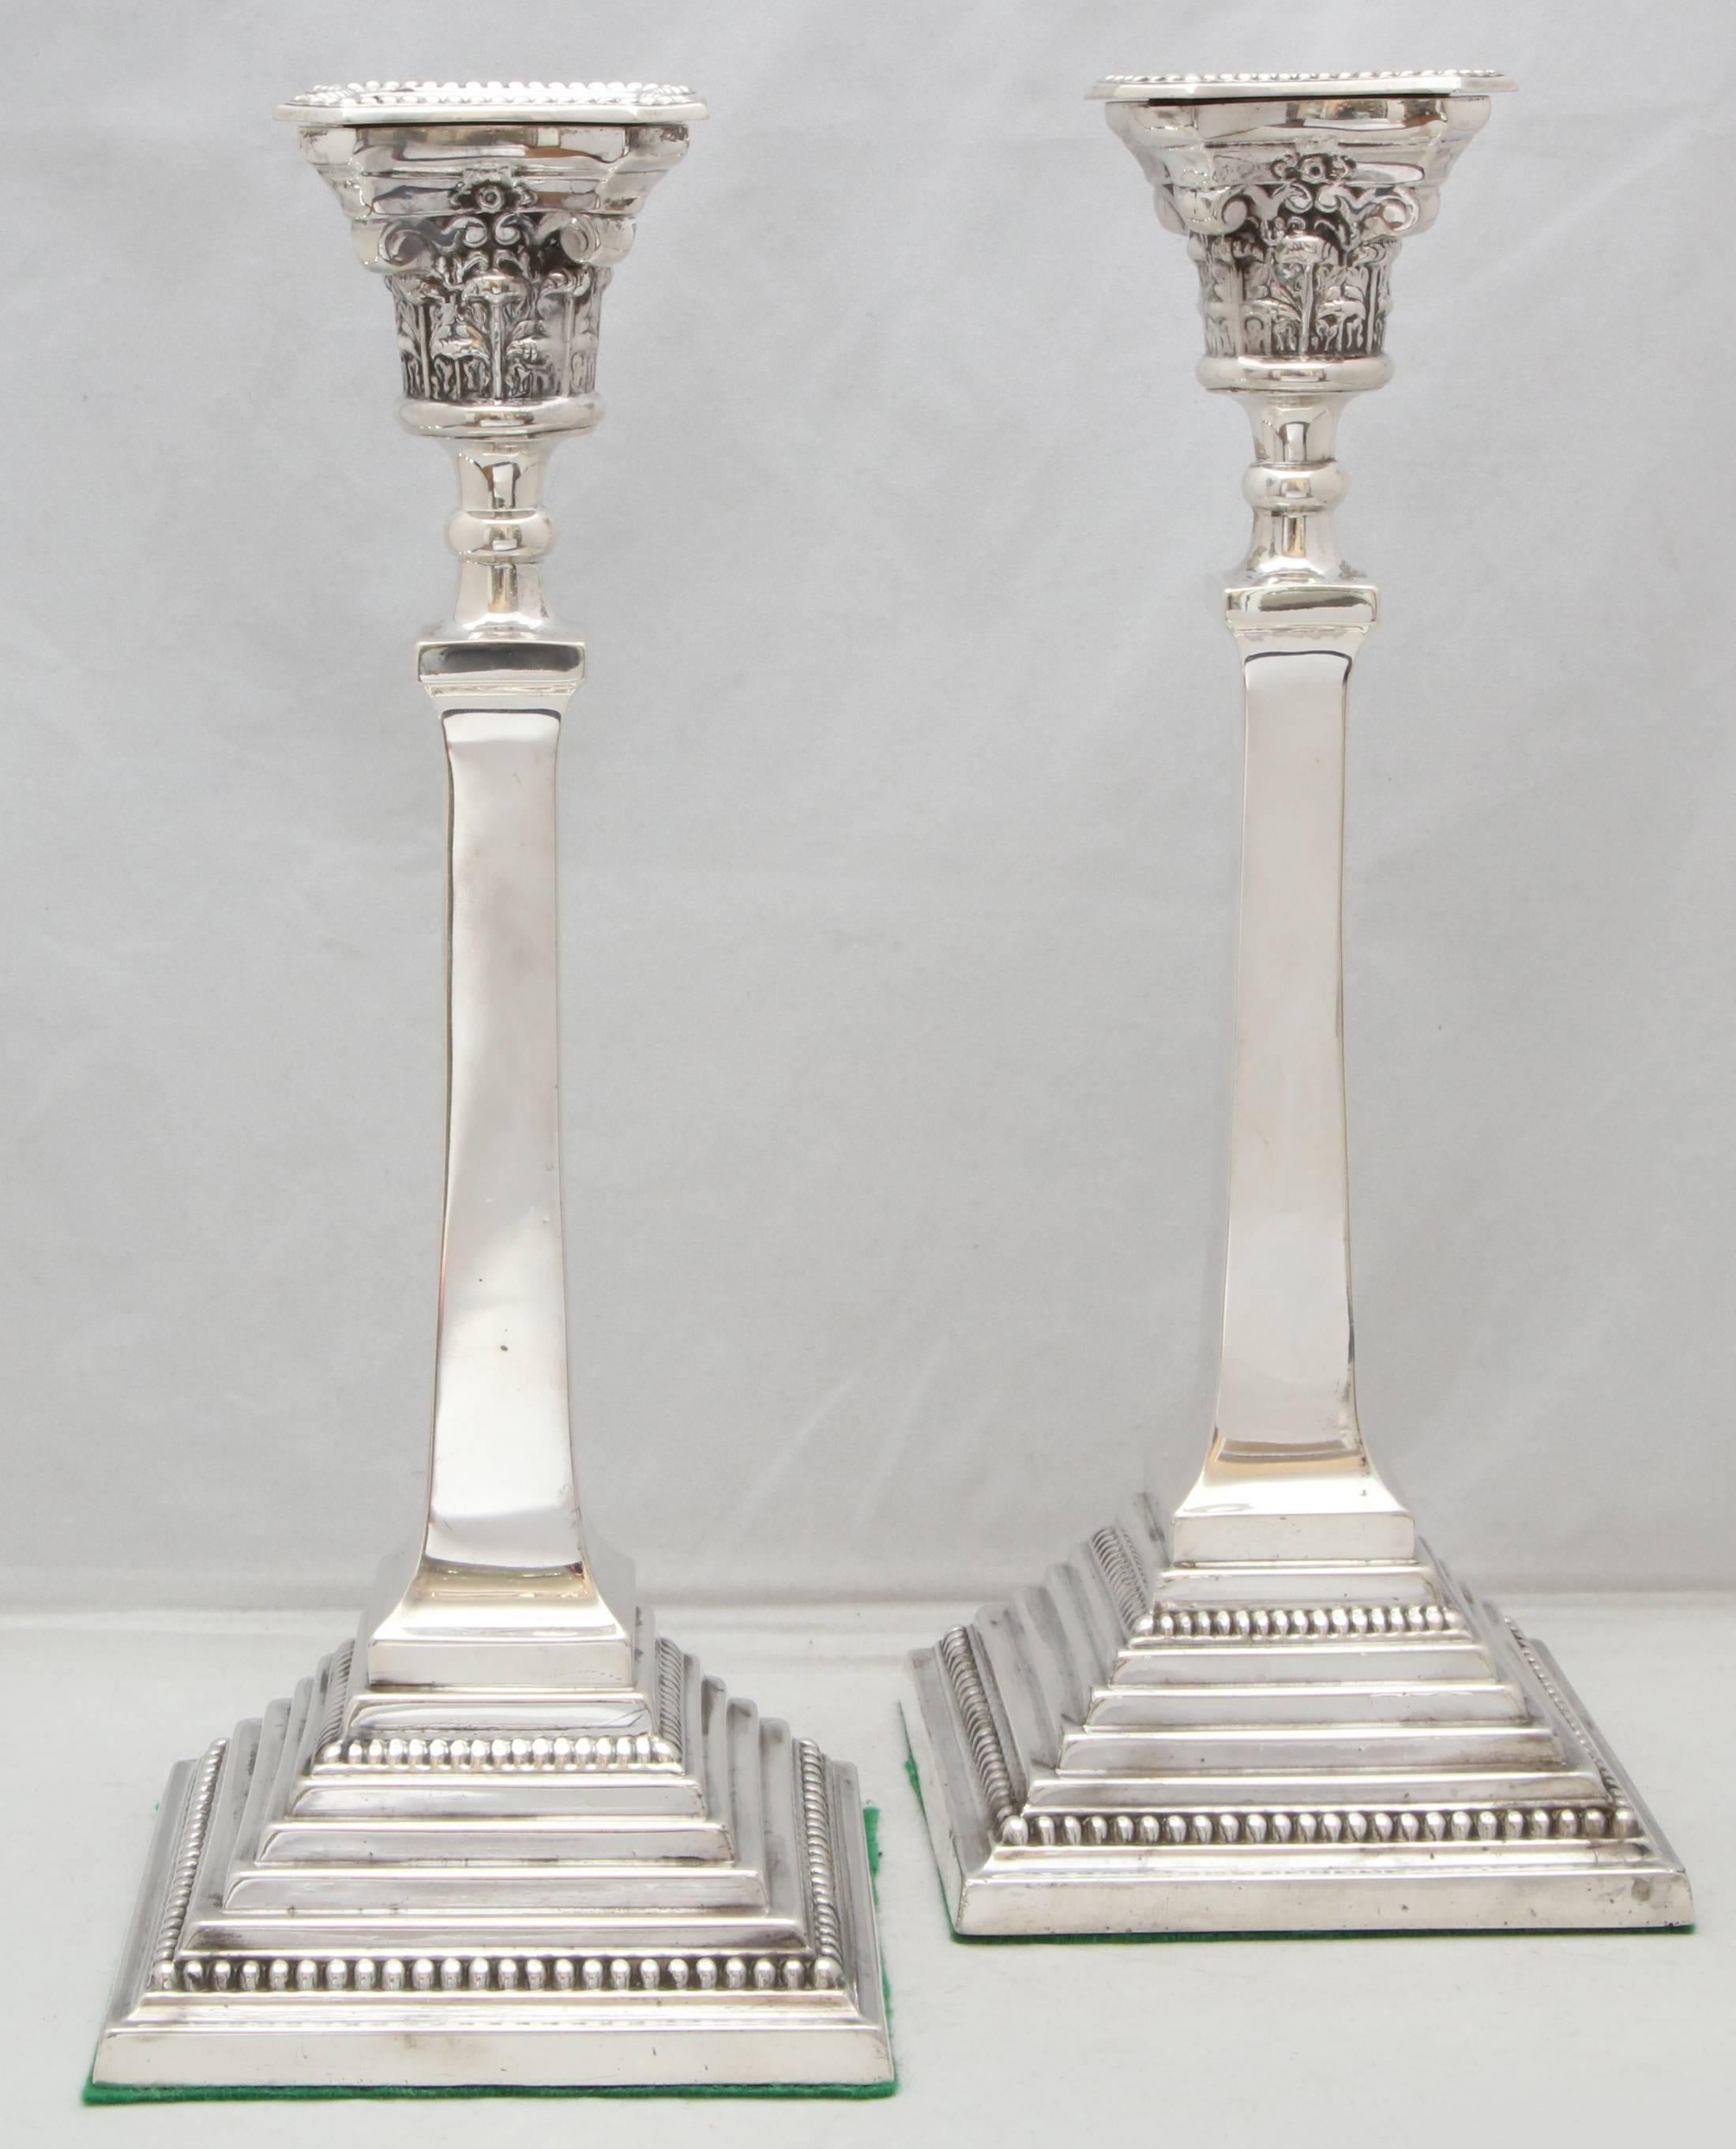 Grands chandeliers édouardiens en argent sterling, néoclassiques, en forme de colonne, Birmingham, Angleterre, 1914, Bayliss et Coulthard - fabricants. Mesures : 12 1/2 de haut x 5 de large x 5 de profondeur (à la base carrée de chaque). Pondéré. Le